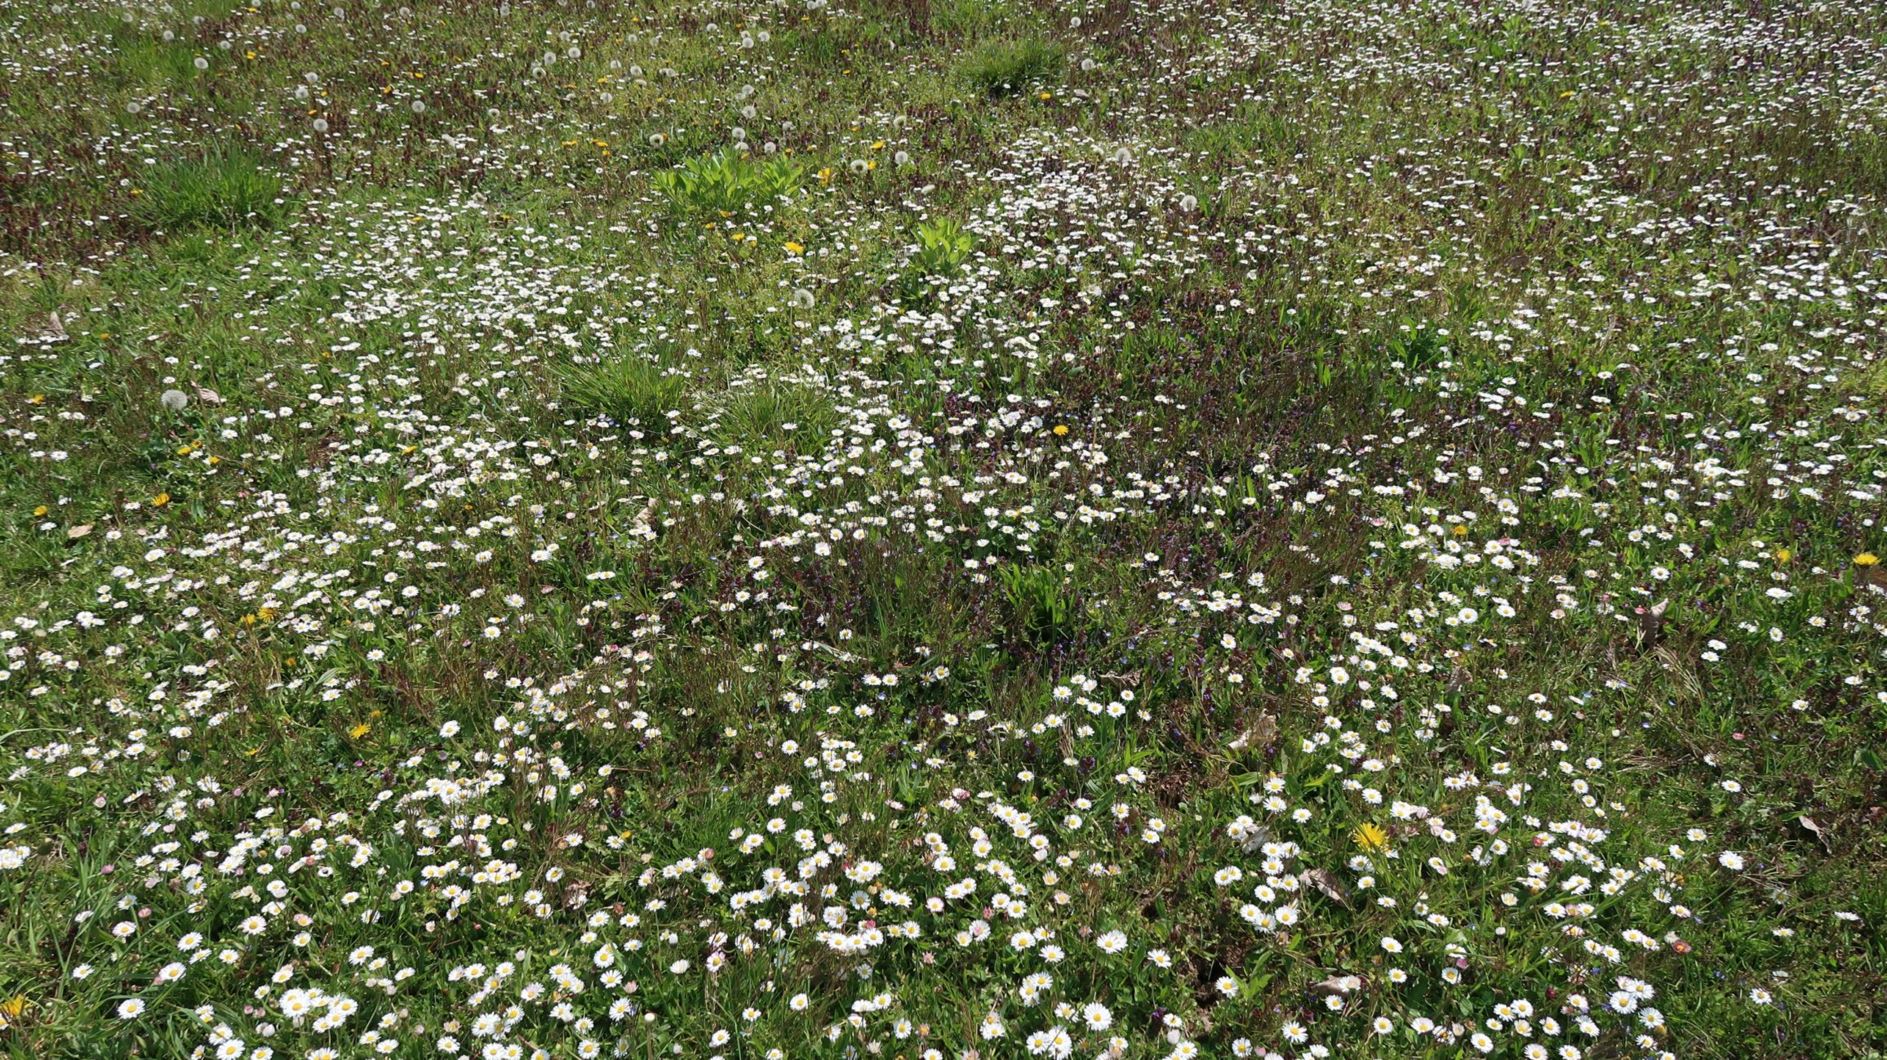 Bellis perennis - Gänseblümchen, daisy